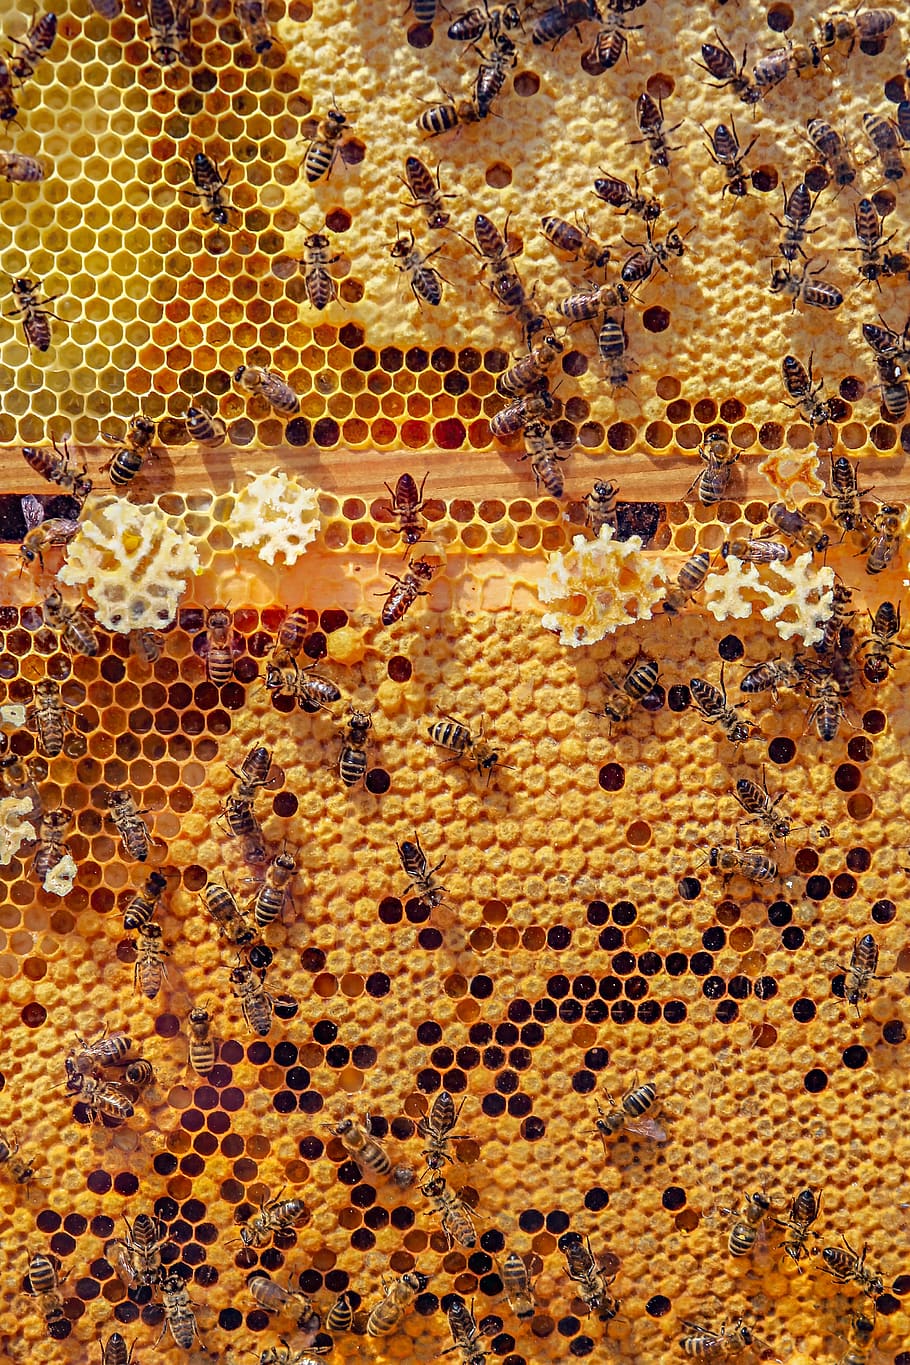 81786 Bee Wallpaper Images Stock Photos  Vectors  Shutterstock